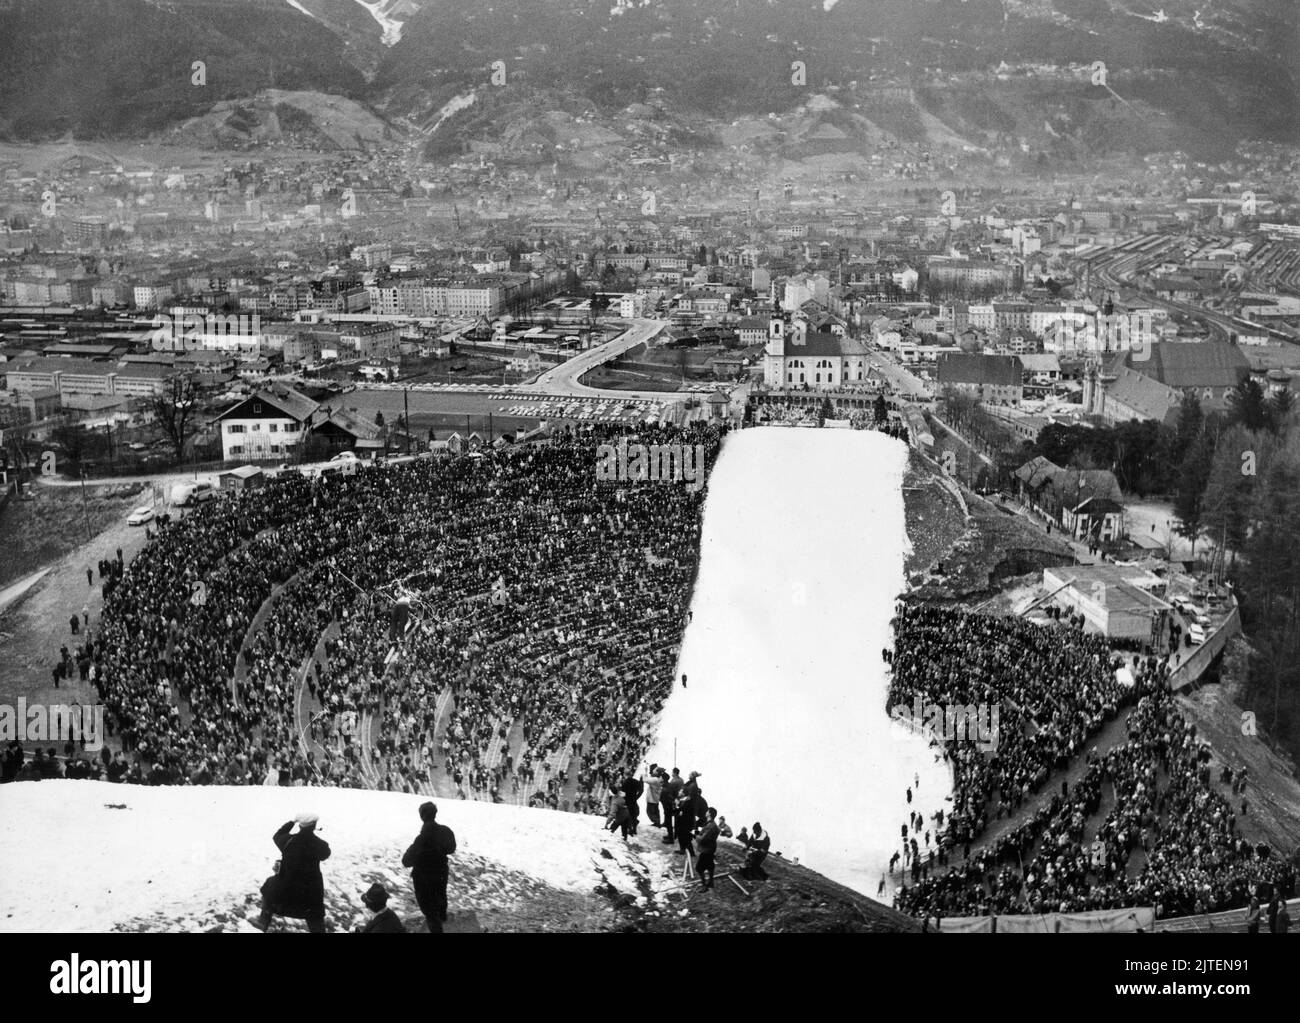 Original-Bildunterschrift: Einweihung der neuen Olympia-Schanze in Innsbruck anlässlich der Internationalen Vierschanzentournee der Skispringer auf dem Berg Isel am 30. Dezember, im Hintergrund Innsbruck, Österreich 1963. Stock Photo